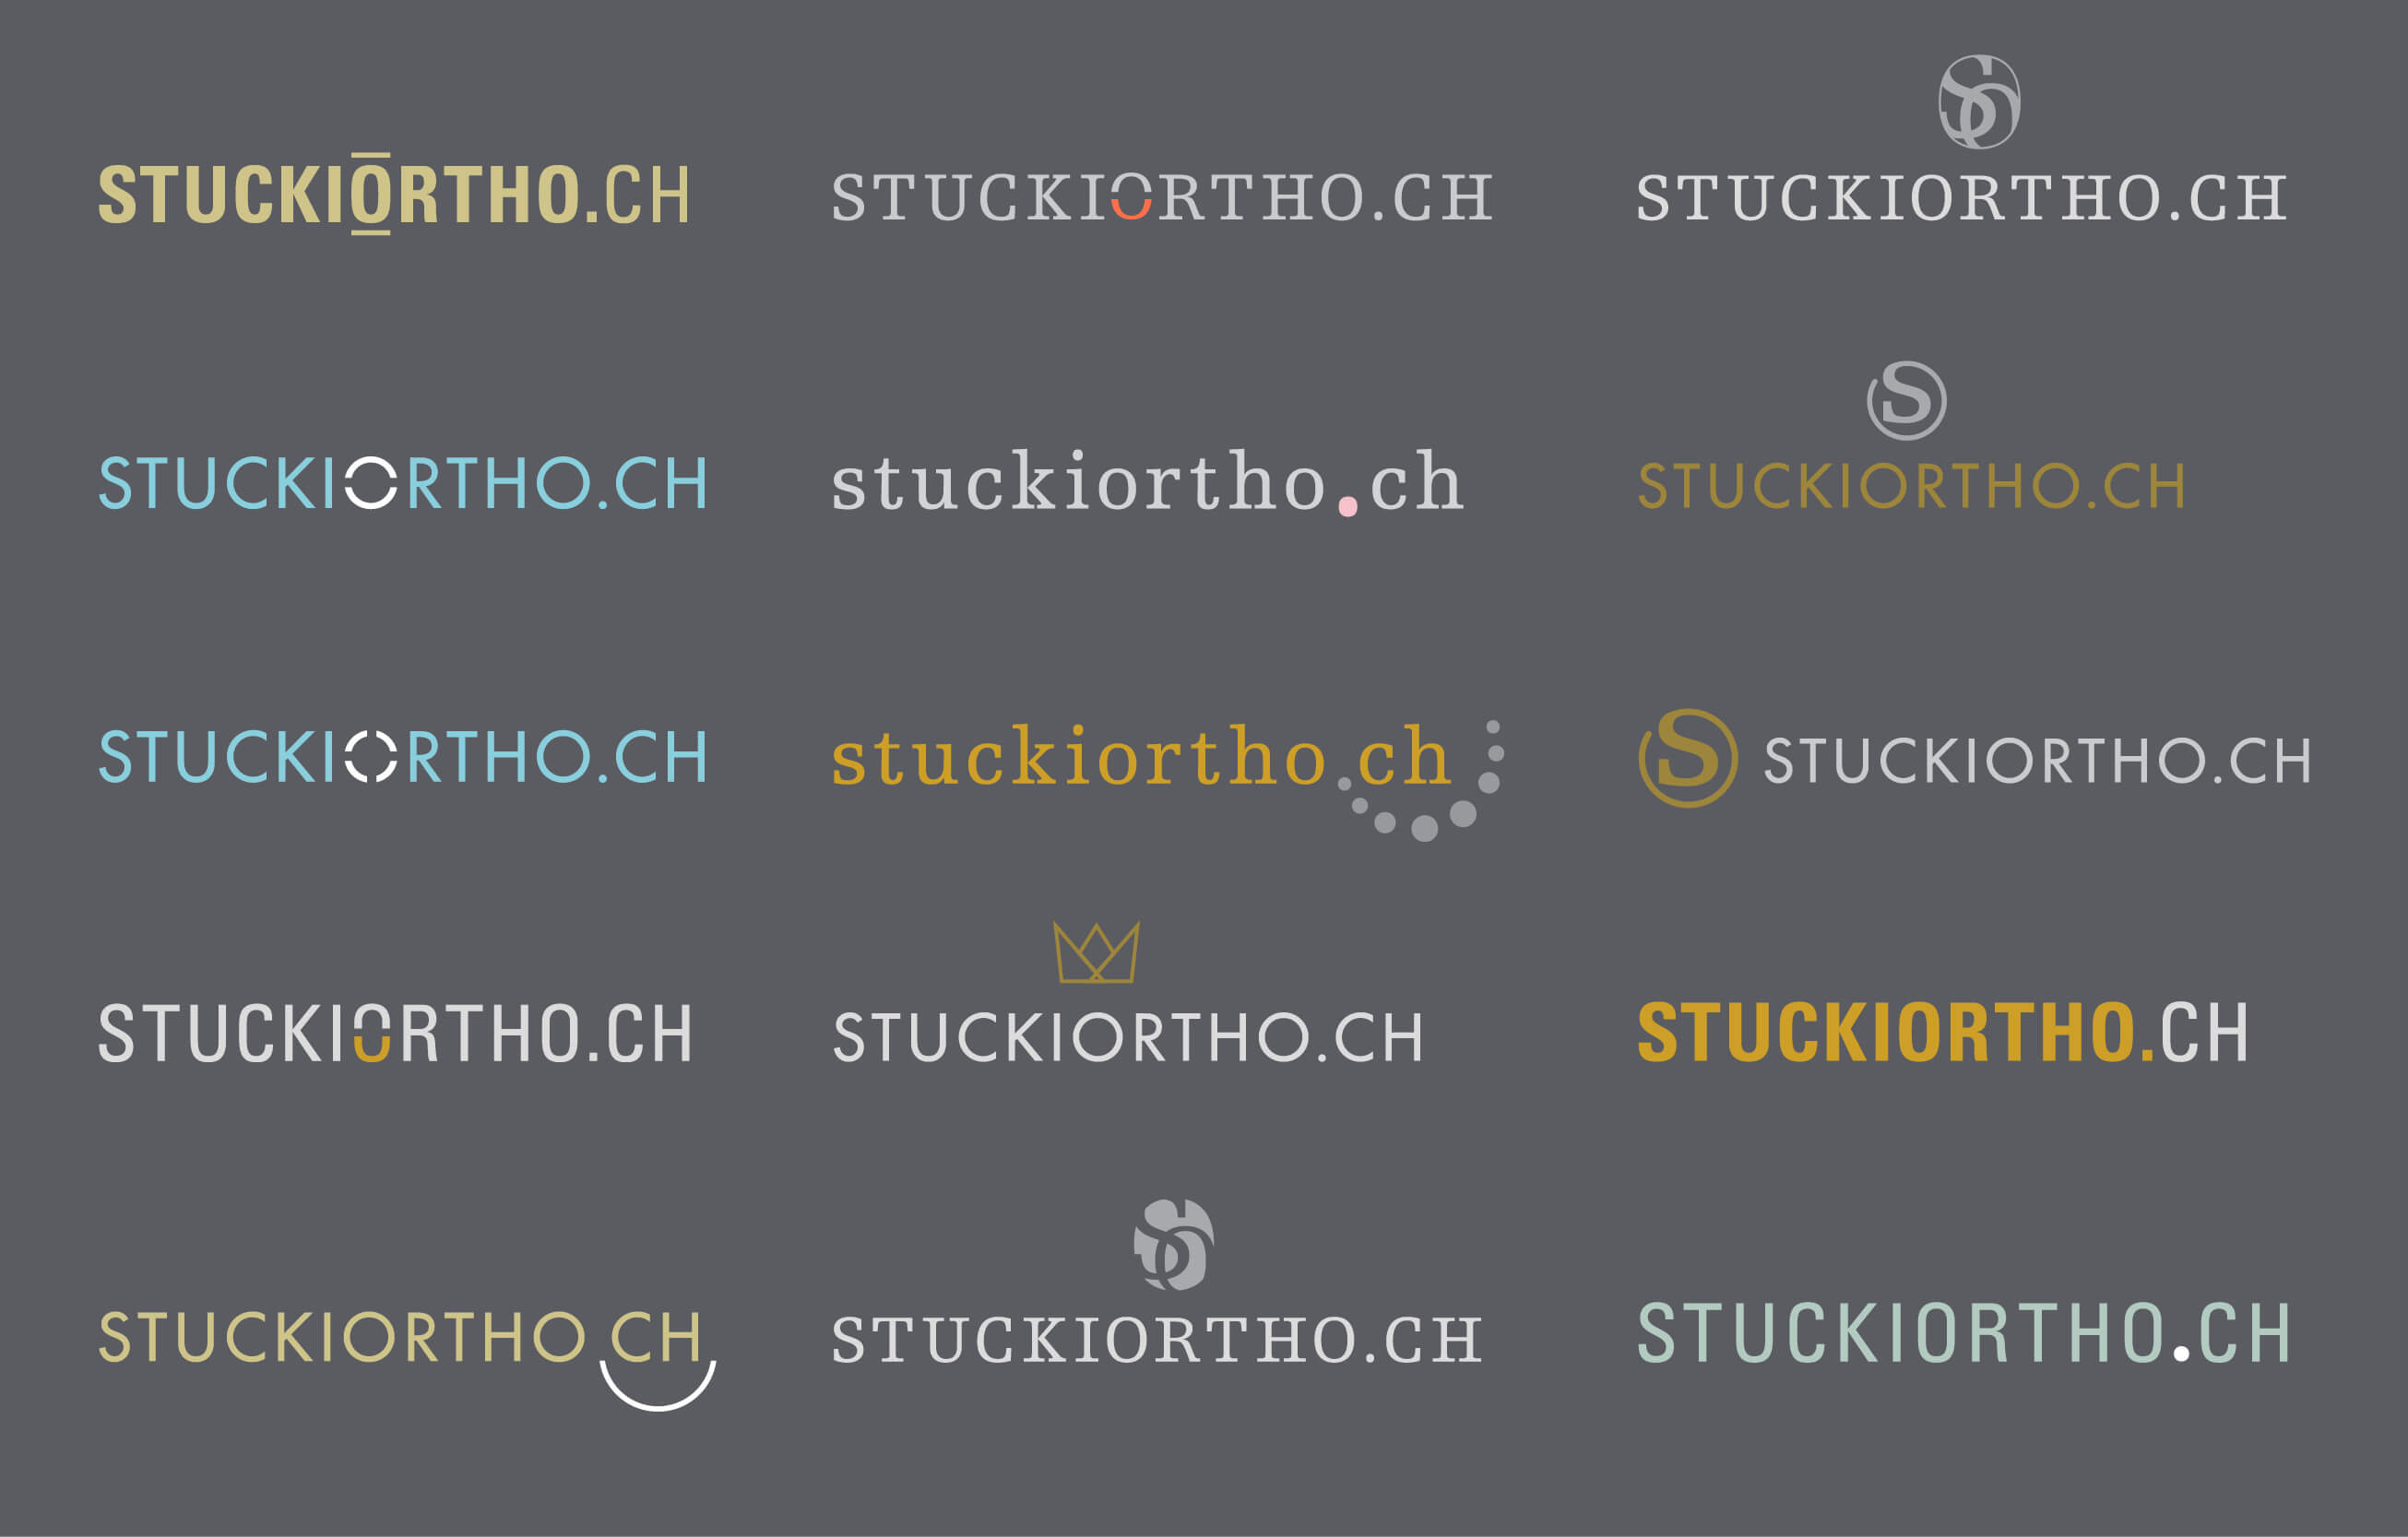 Erfolgsgeschichte_Prozess Logodesign Stuckiortho